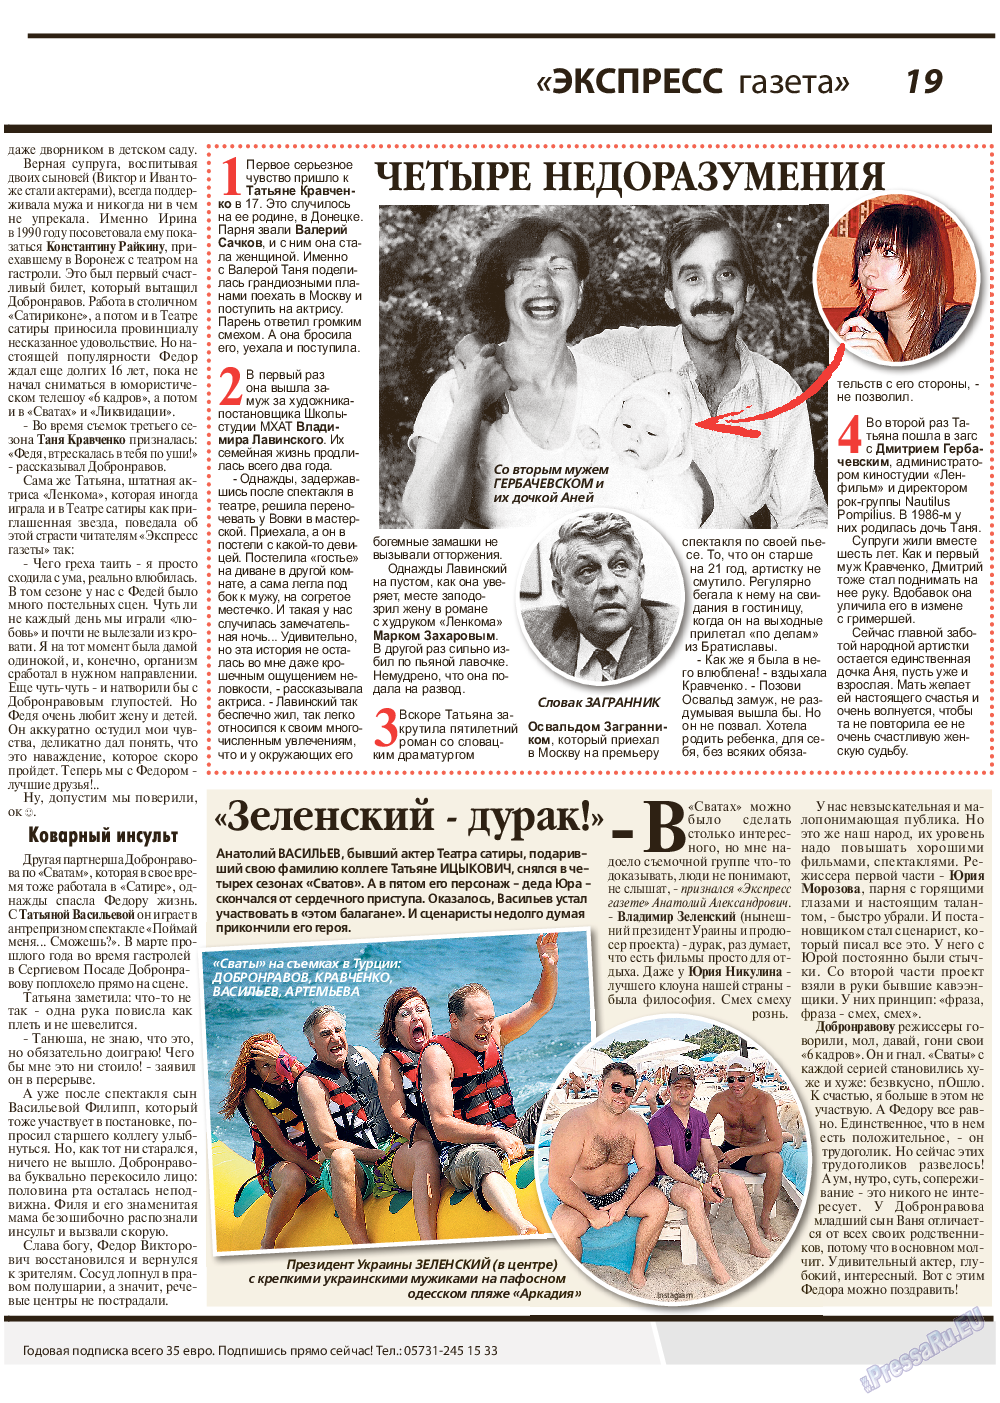 Экспресс газета, газета. 2019 №9 стр.19